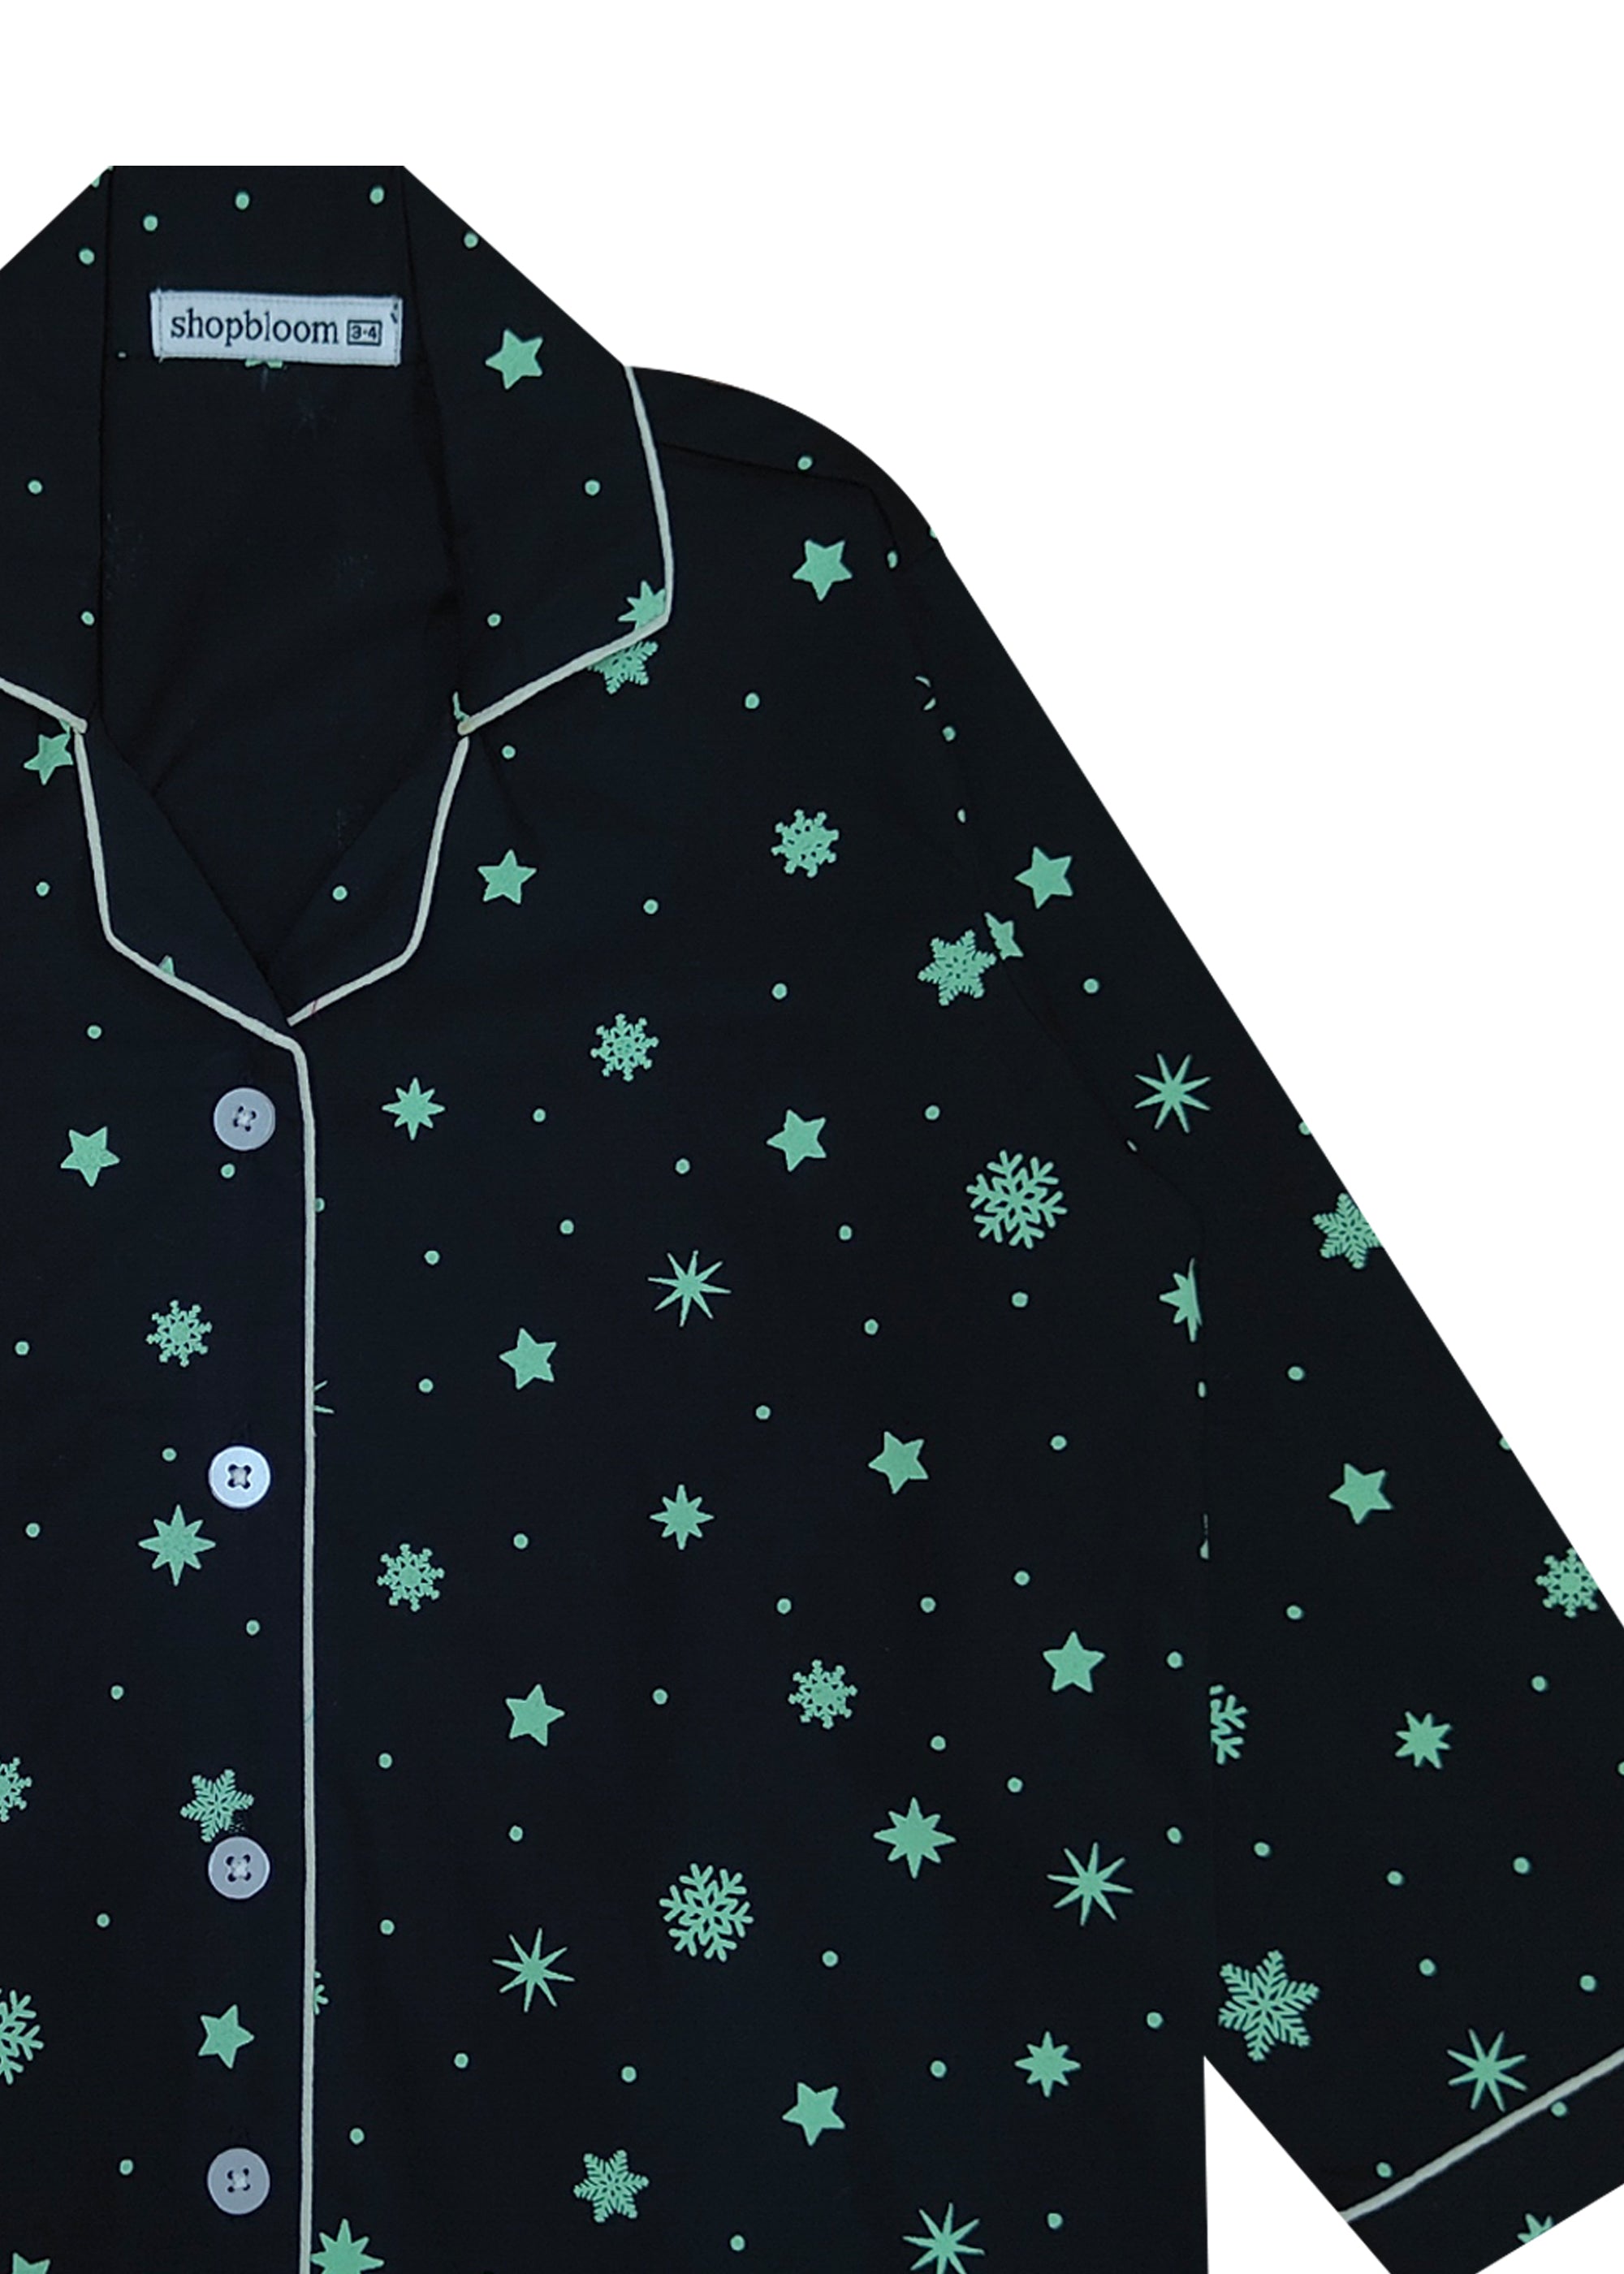 Glow In The Dark Christmas Snowflakes Print Long Sleeve Kids Night Suit